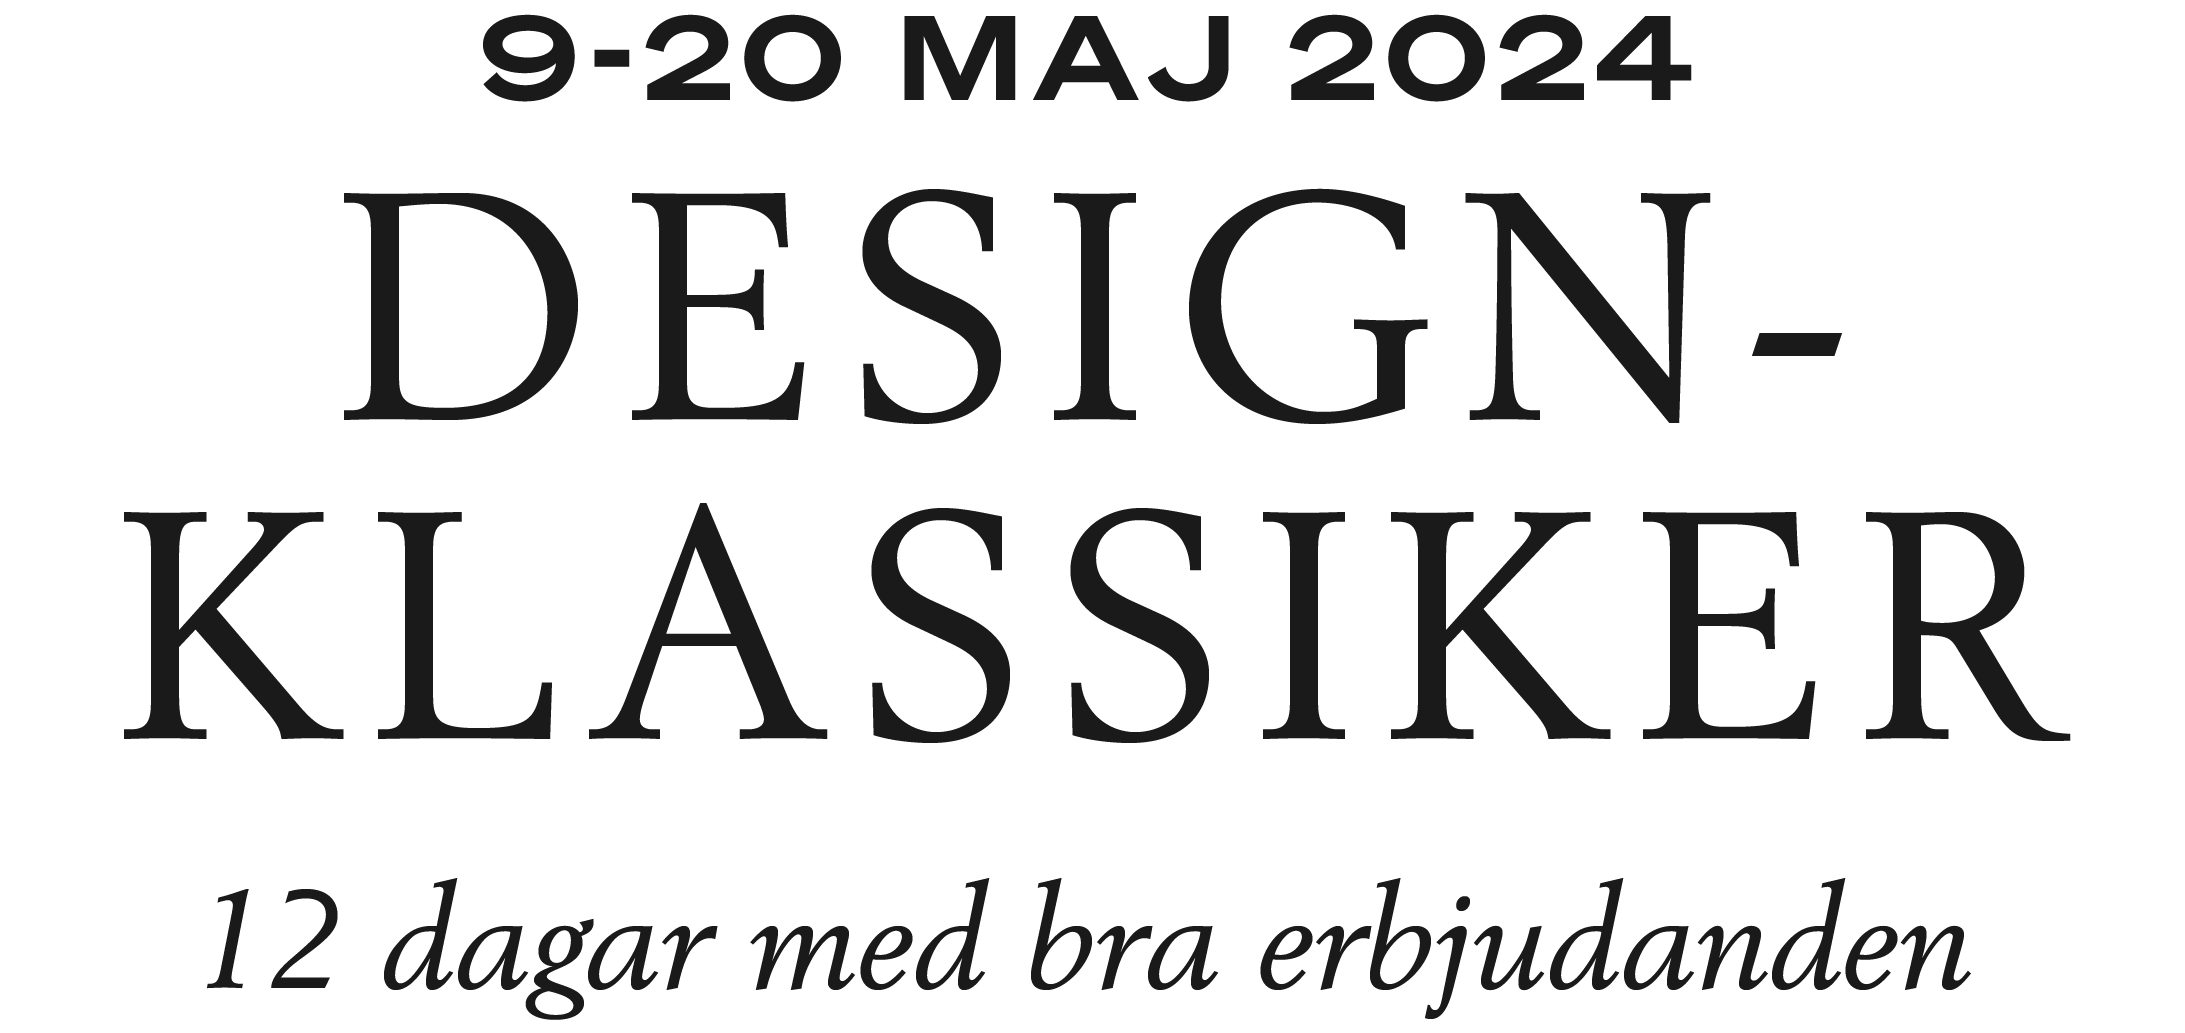 Design Classics May 2024